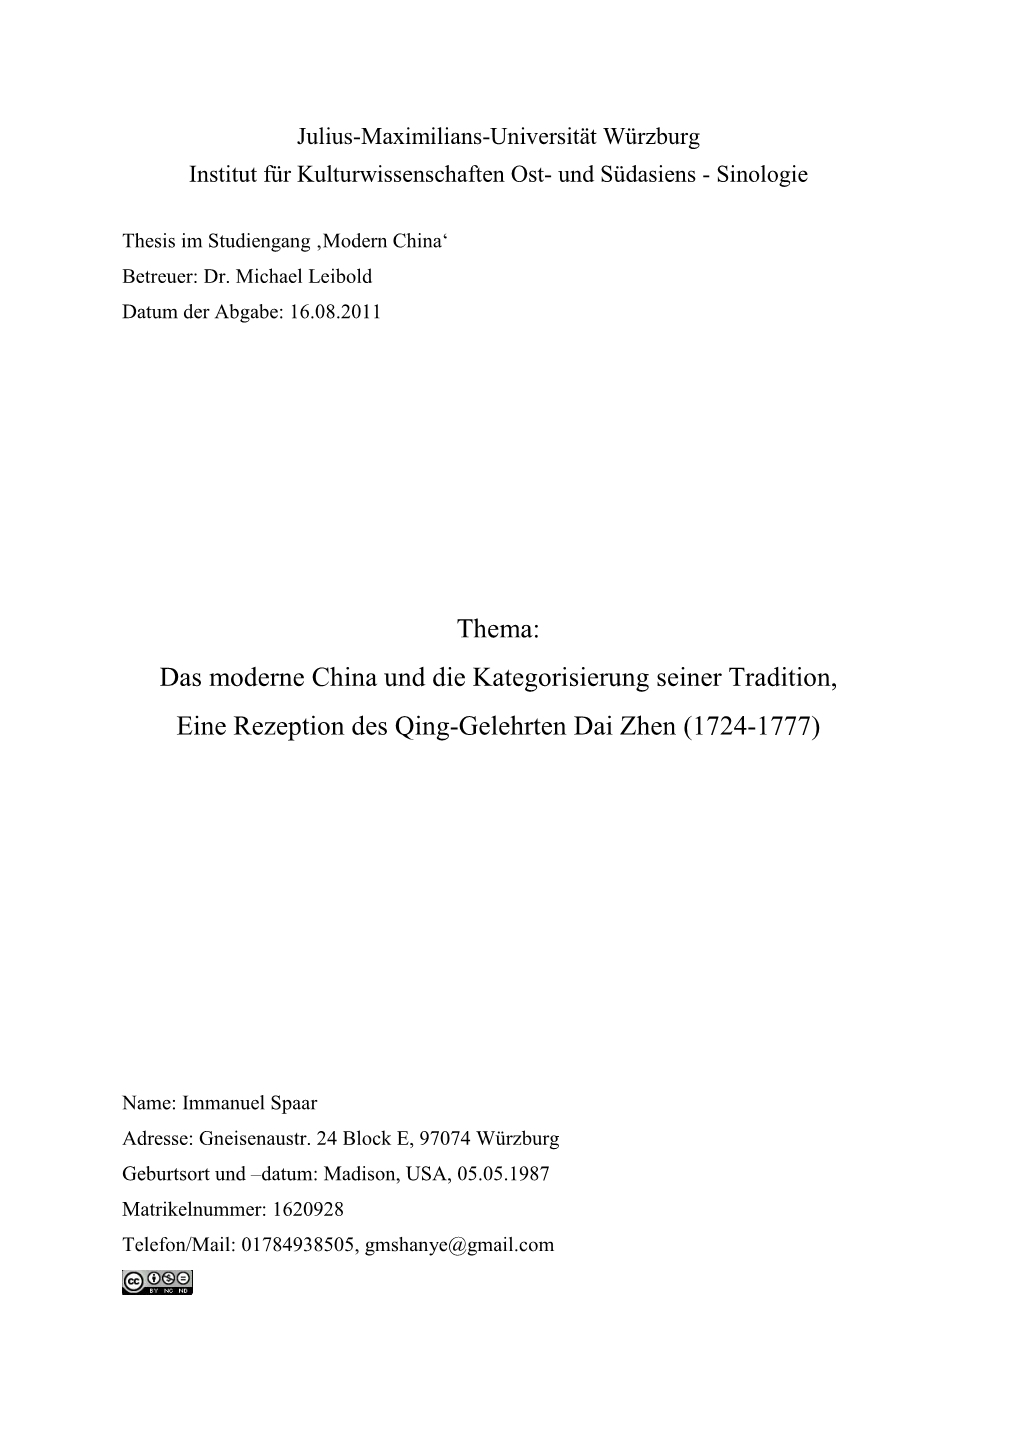 Thema: Das Moderne China Und Die Kategorisierung Seiner Tradition, Eine Rezeption Des Qing-Gelehrten Dai Zhen (1724-1777)